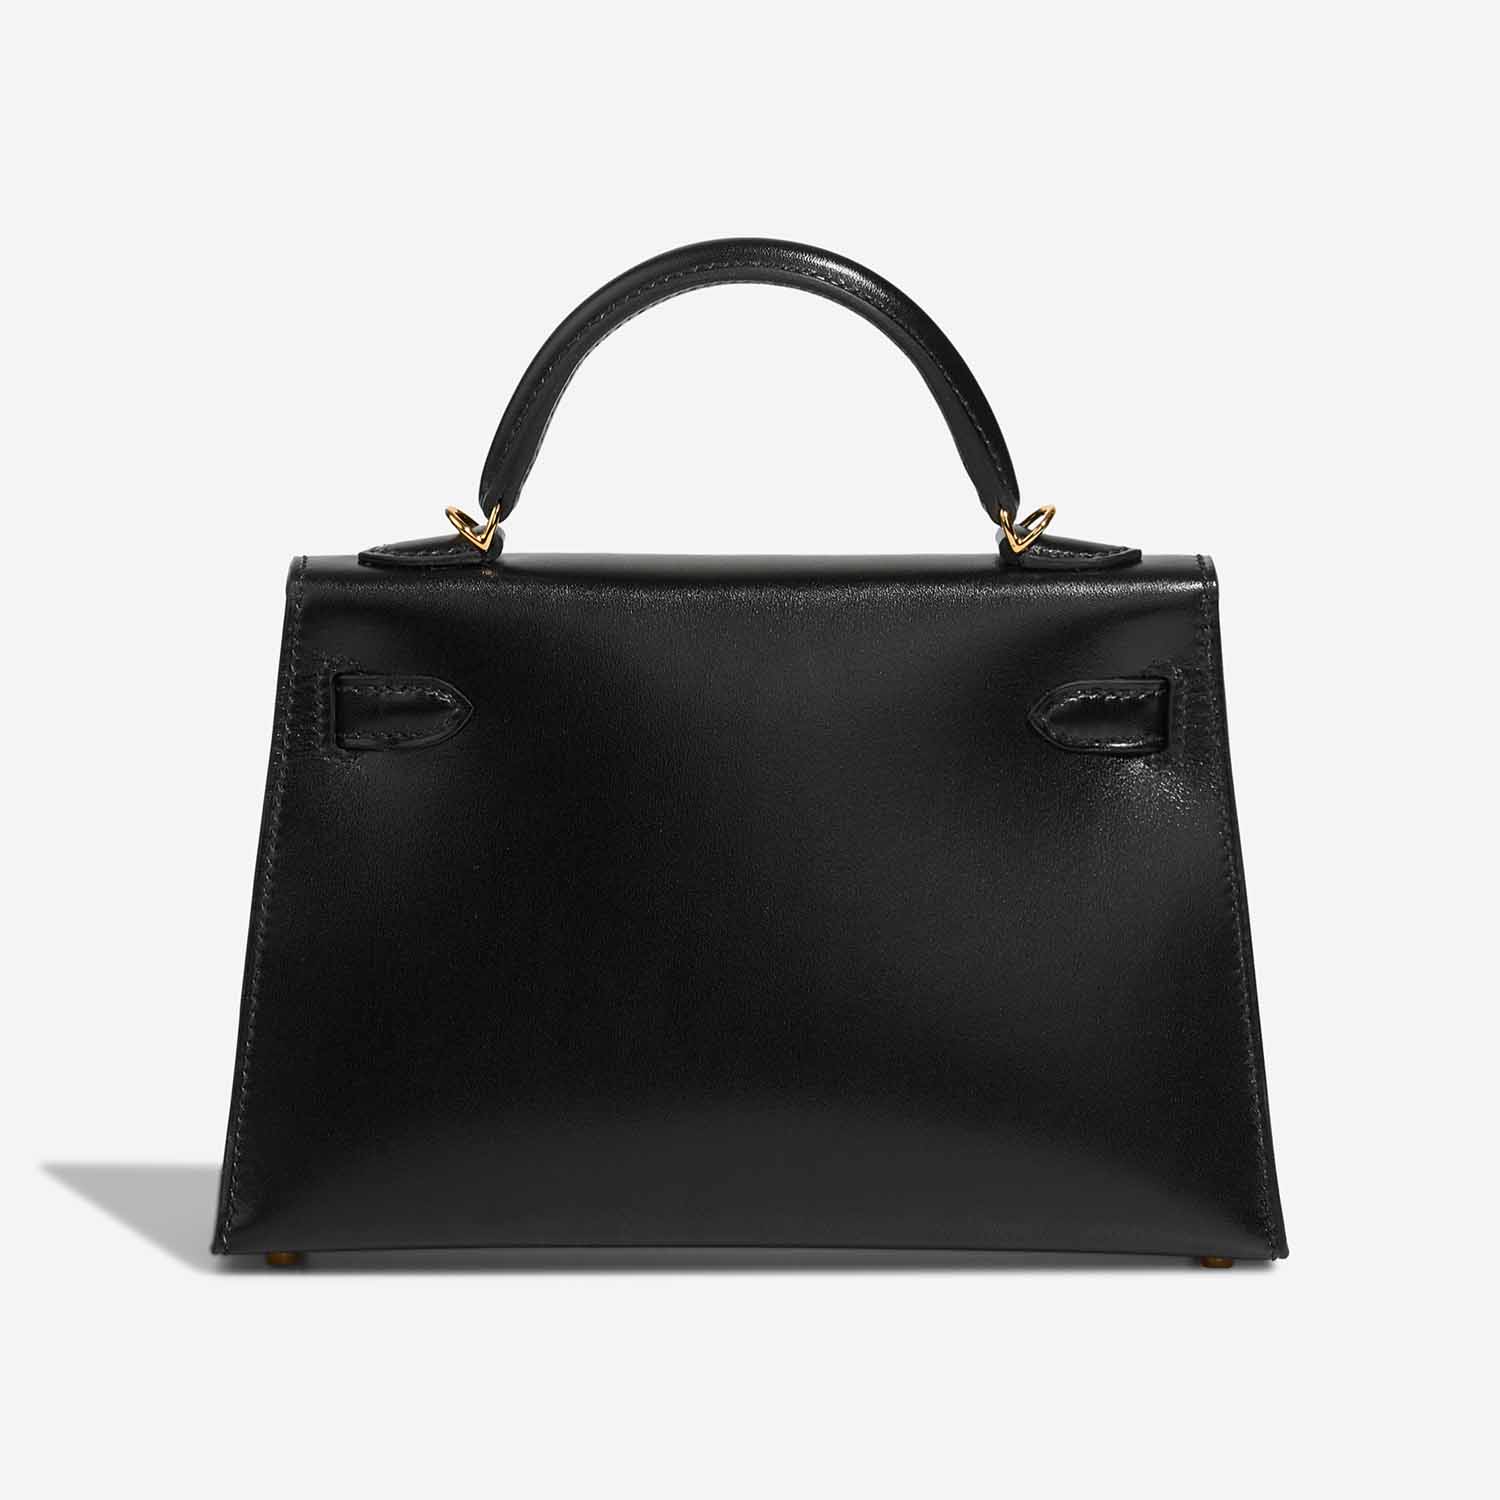 Hermès Kelly Mini Black Back | Verkaufen Sie Ihre Designertasche auf Saclab.com